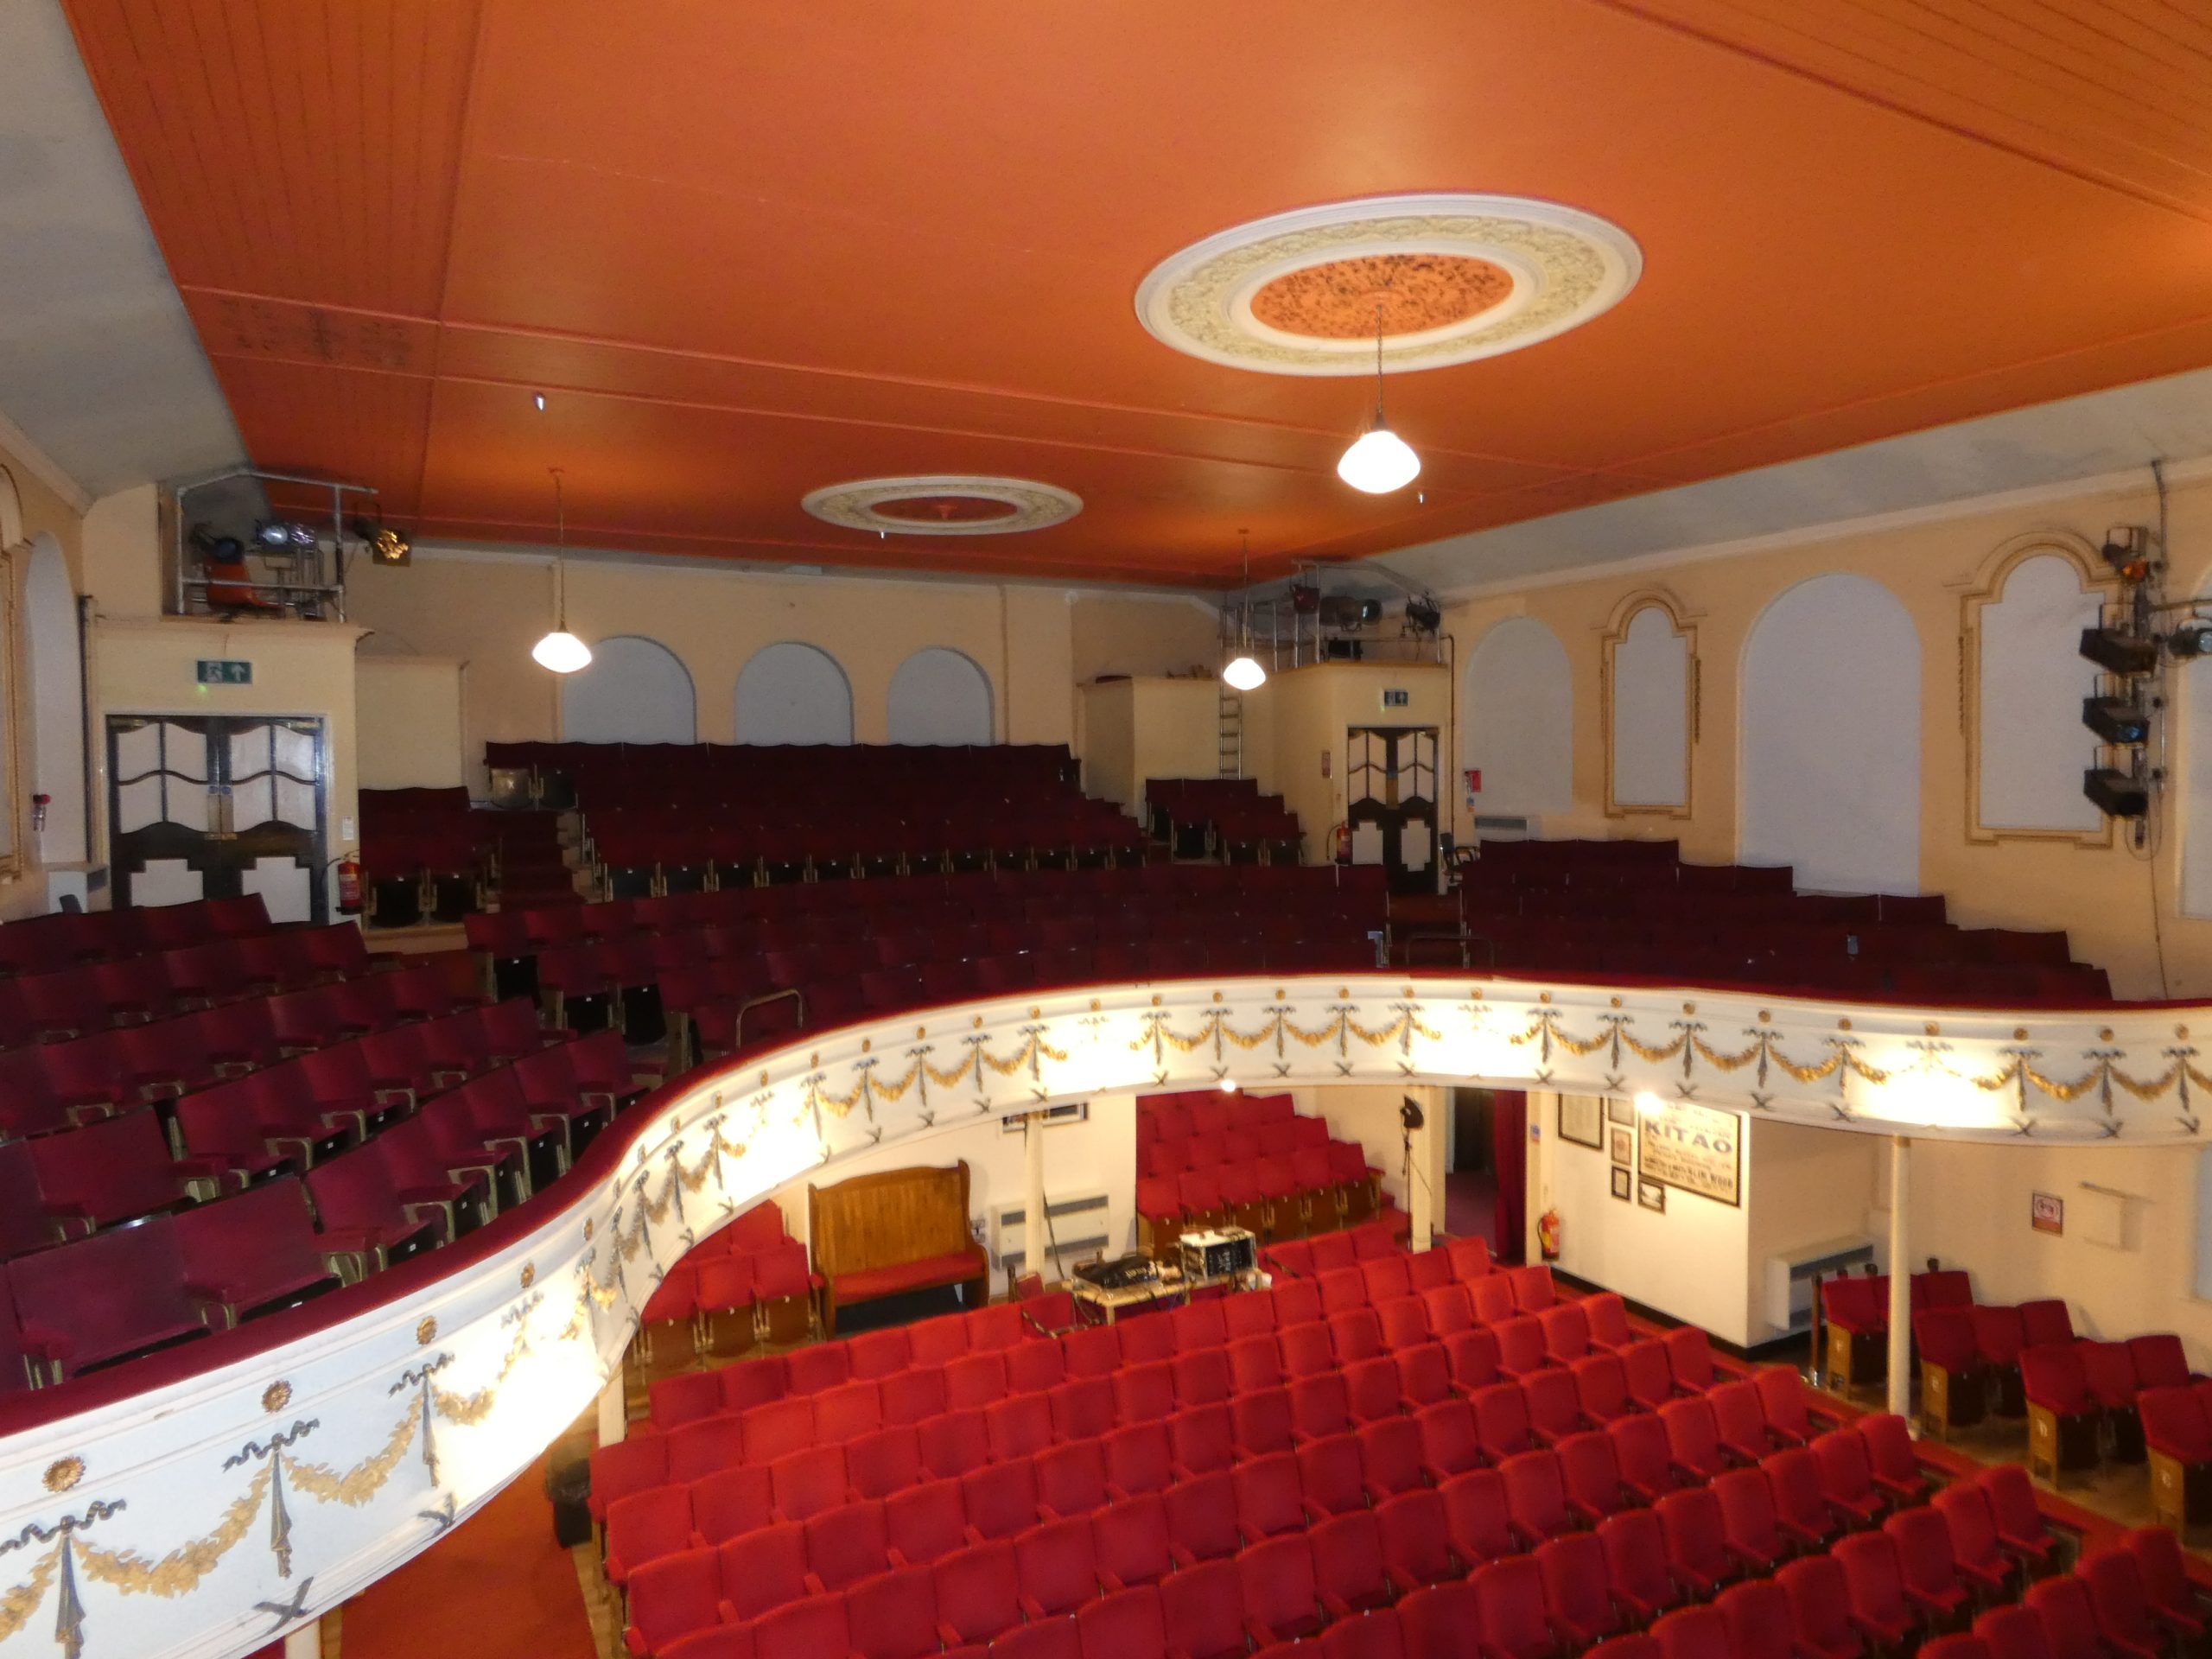 Aerial view of The Albert Hall auditorium